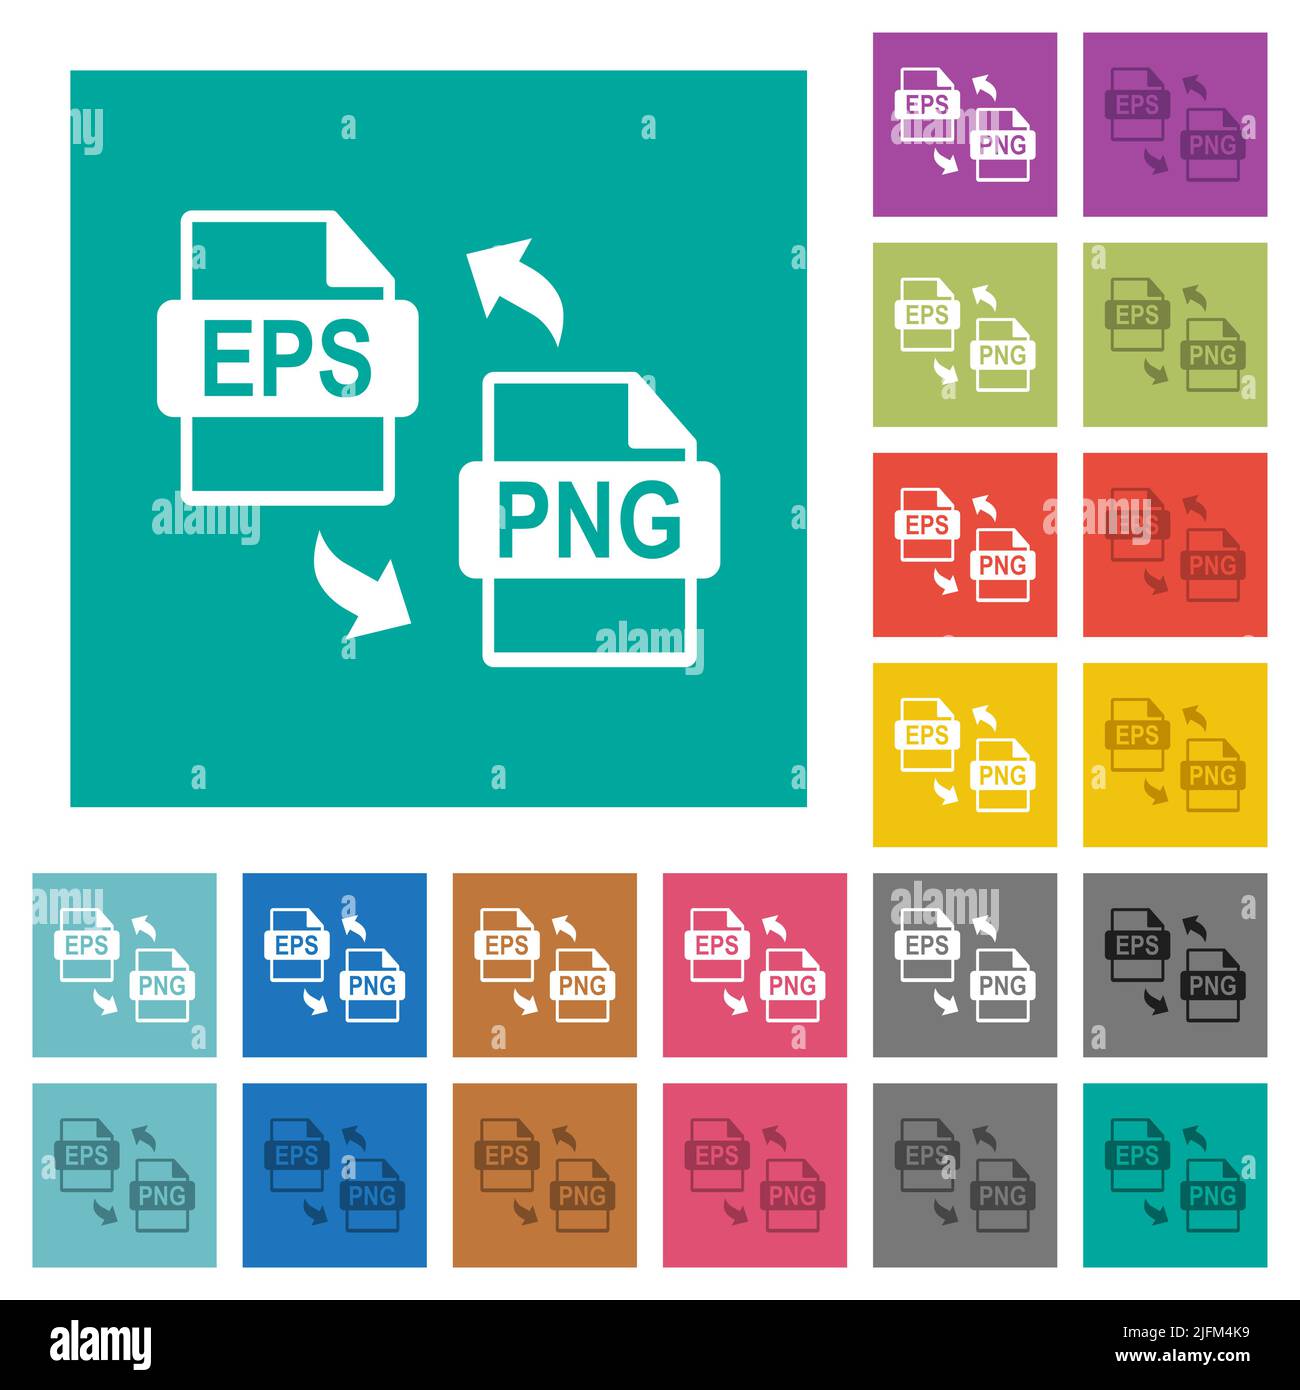 Free Plain Pastel Background - Download in Illustrator, EPS, SVG, JPG, GIF,  PNG